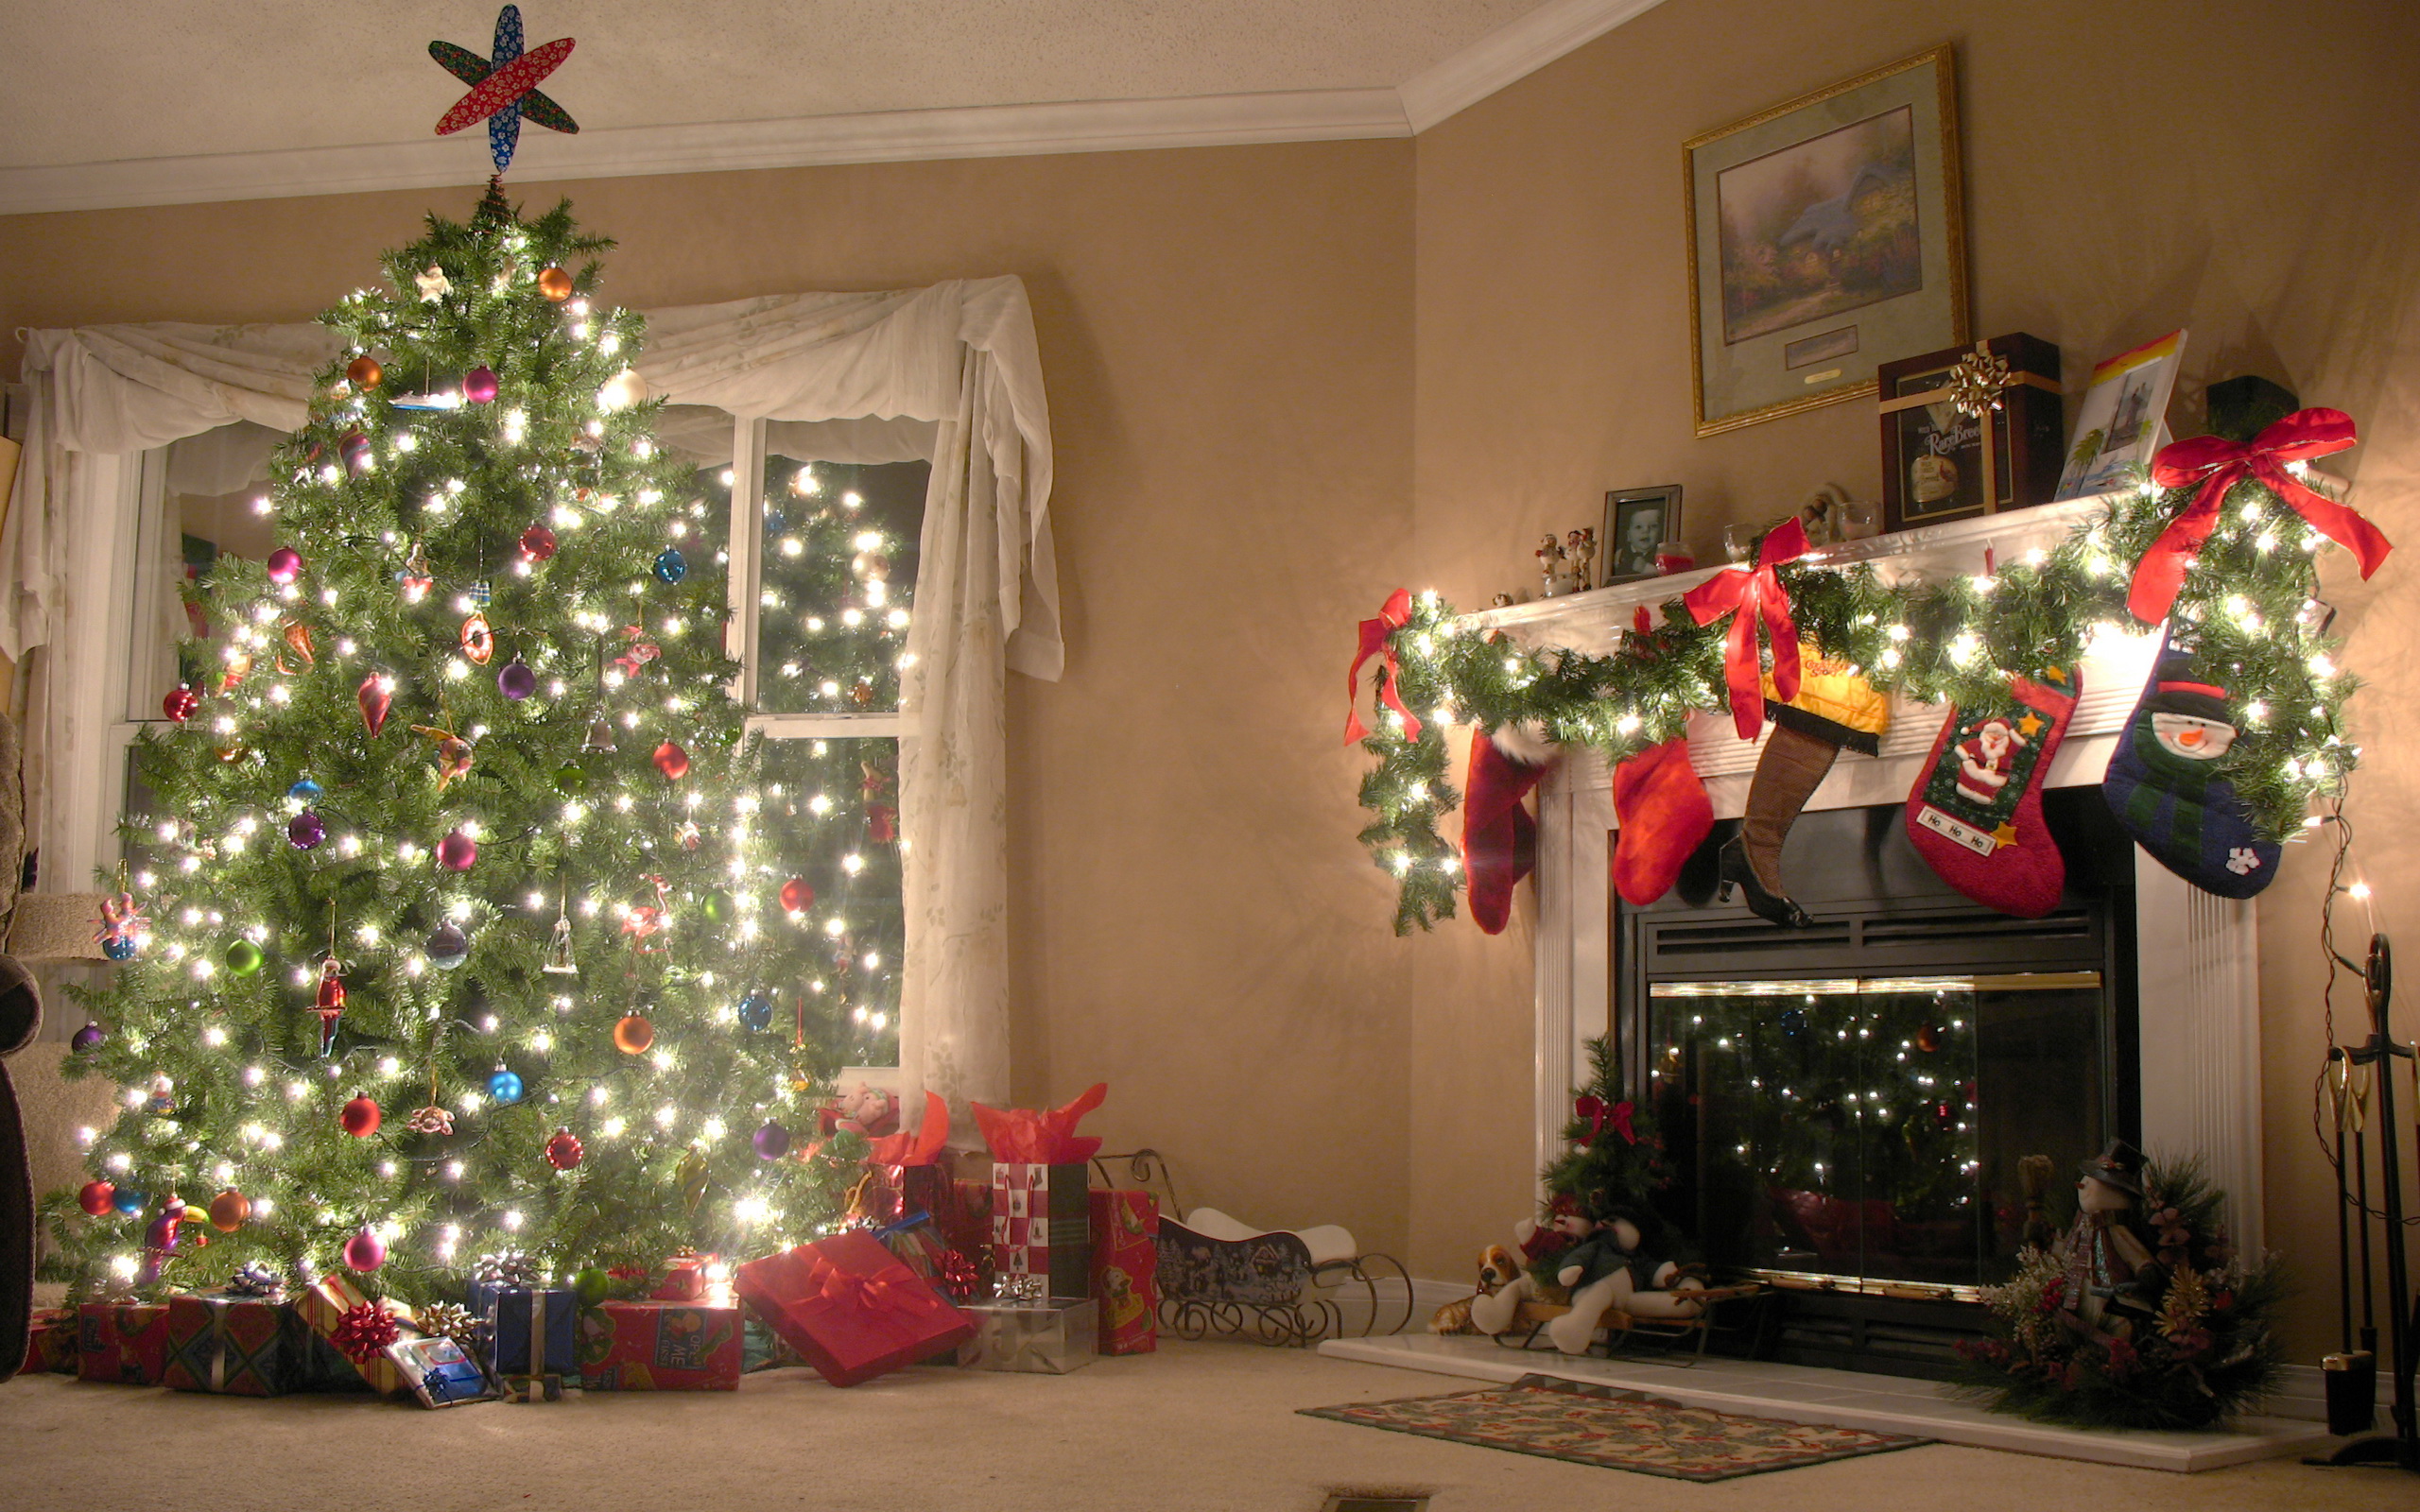 Места связанные с новым годом. Новогодняя комната с елкой. Новогодняя елка. Елка в доме. Рождественская елка.